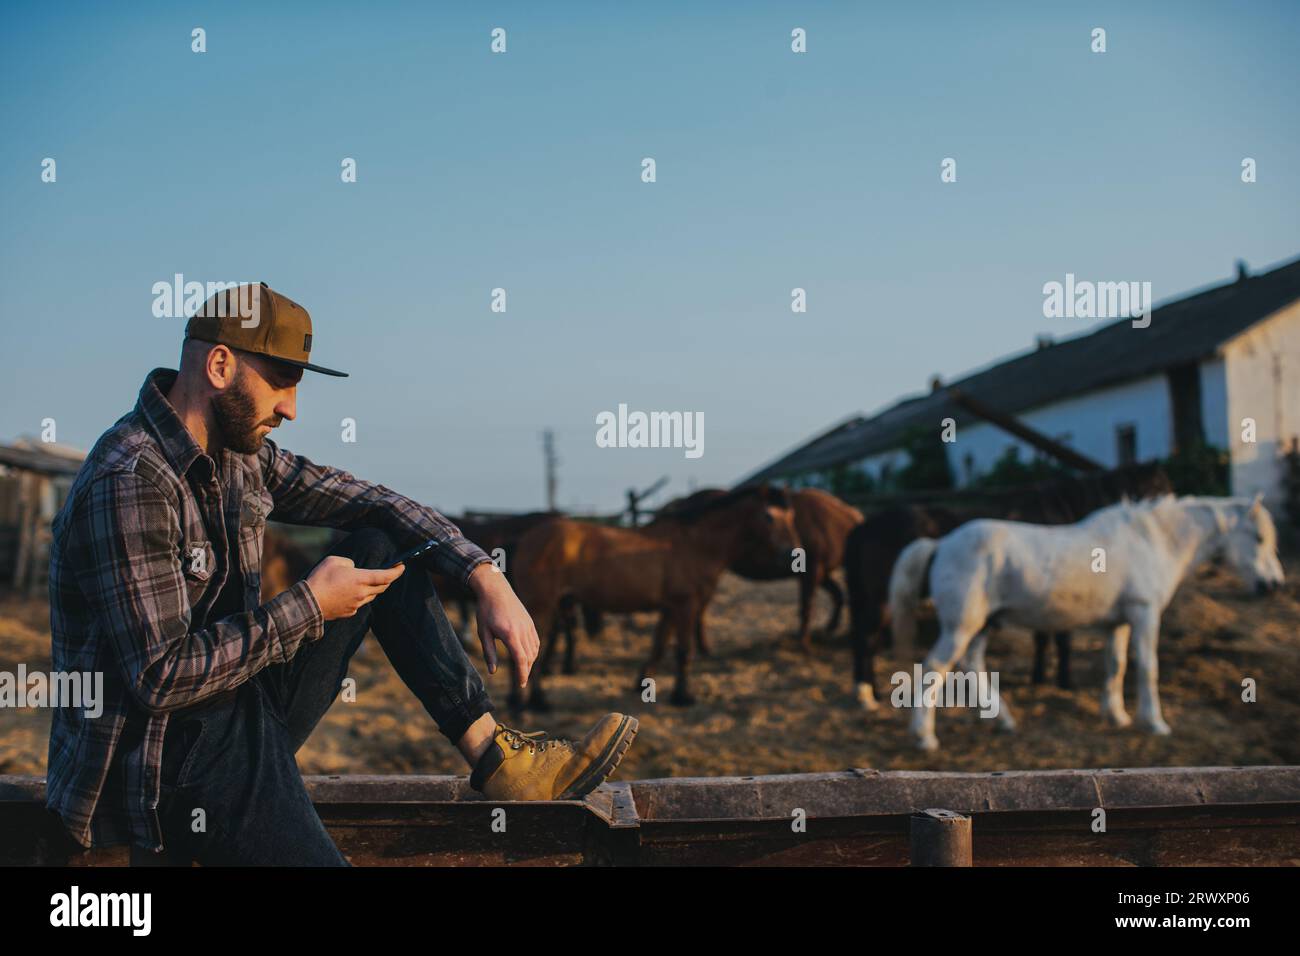 Un giovane con un telefono in mano sullo sfondo di un paddock con i cavalli. Un uomo riposa dopo una giornata di lavoro alla fattoria, al tramonto. Foto Stock